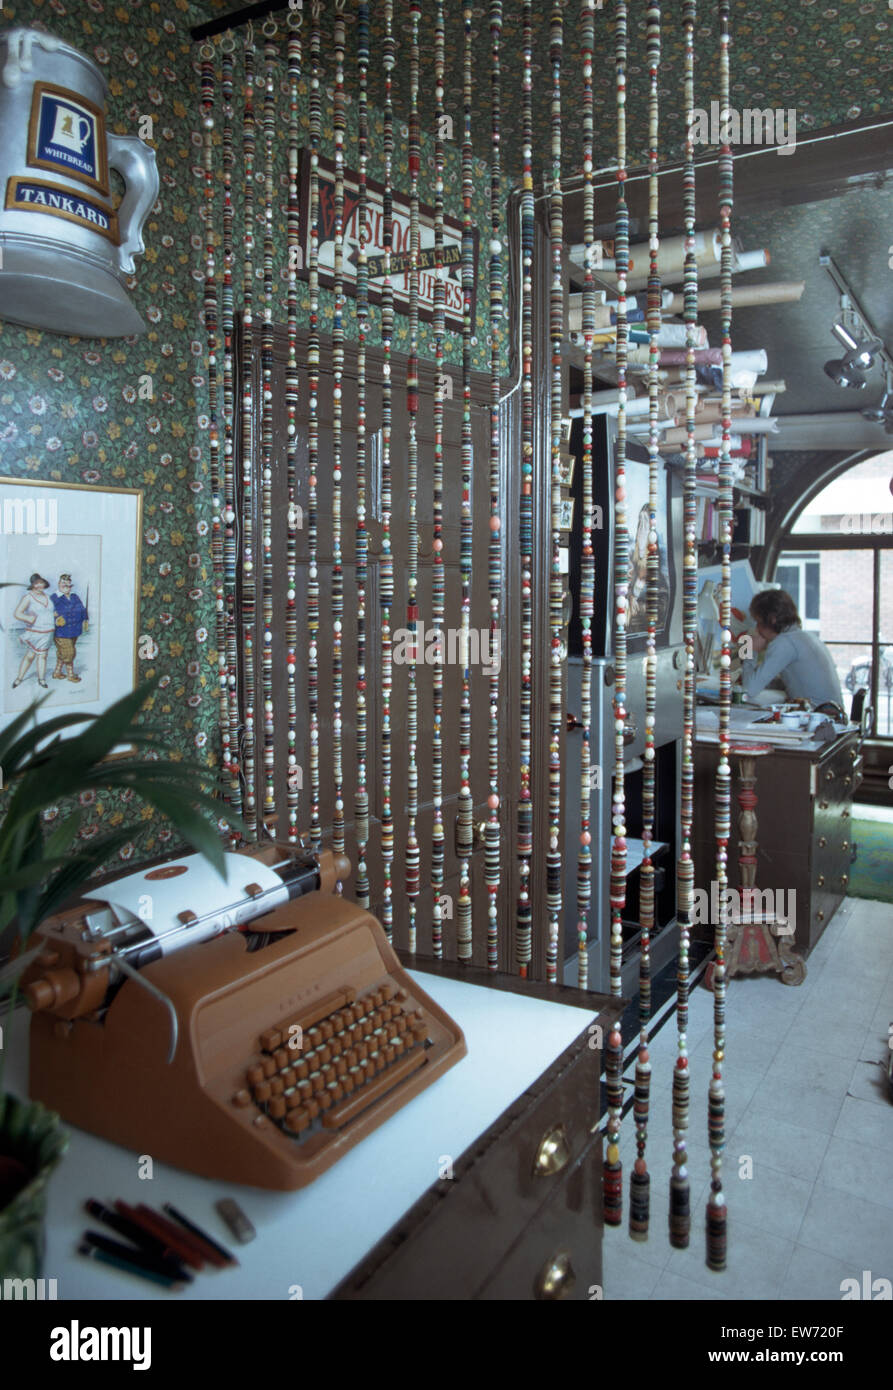 Vintage typewriter et rideau de perles en 1970 étude Banque D'Images